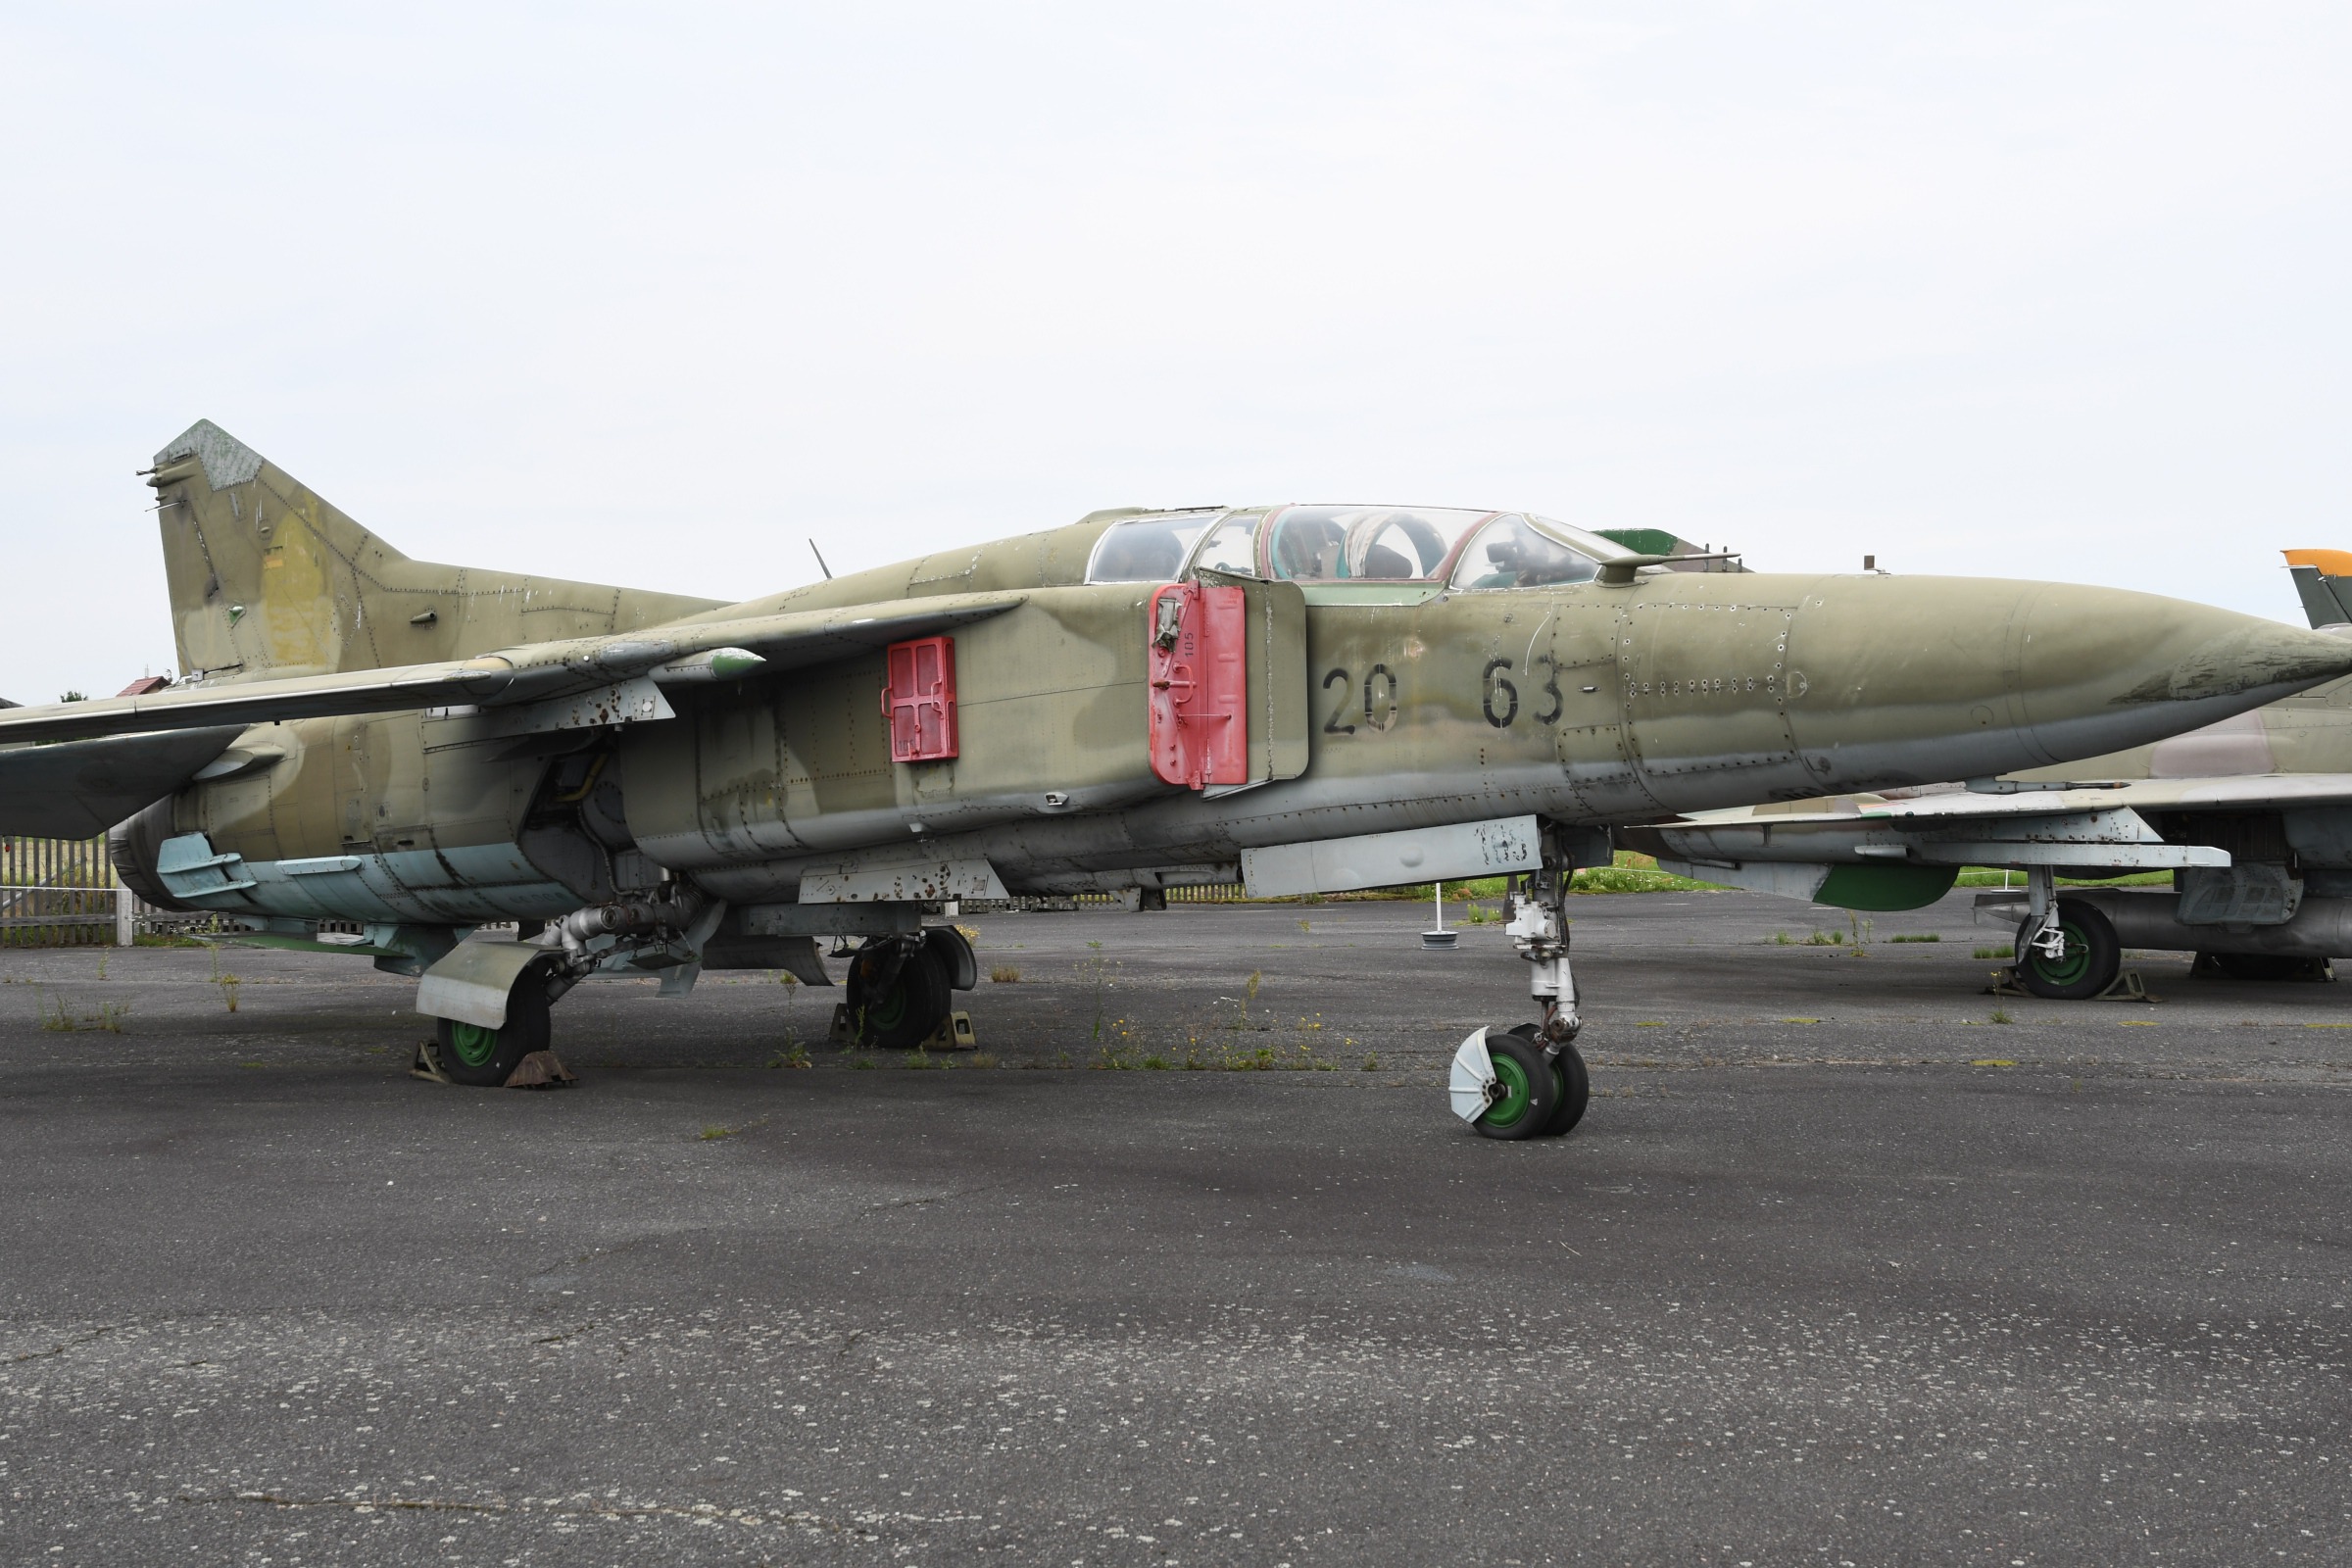 MiG-23UB  (Flogger-C)